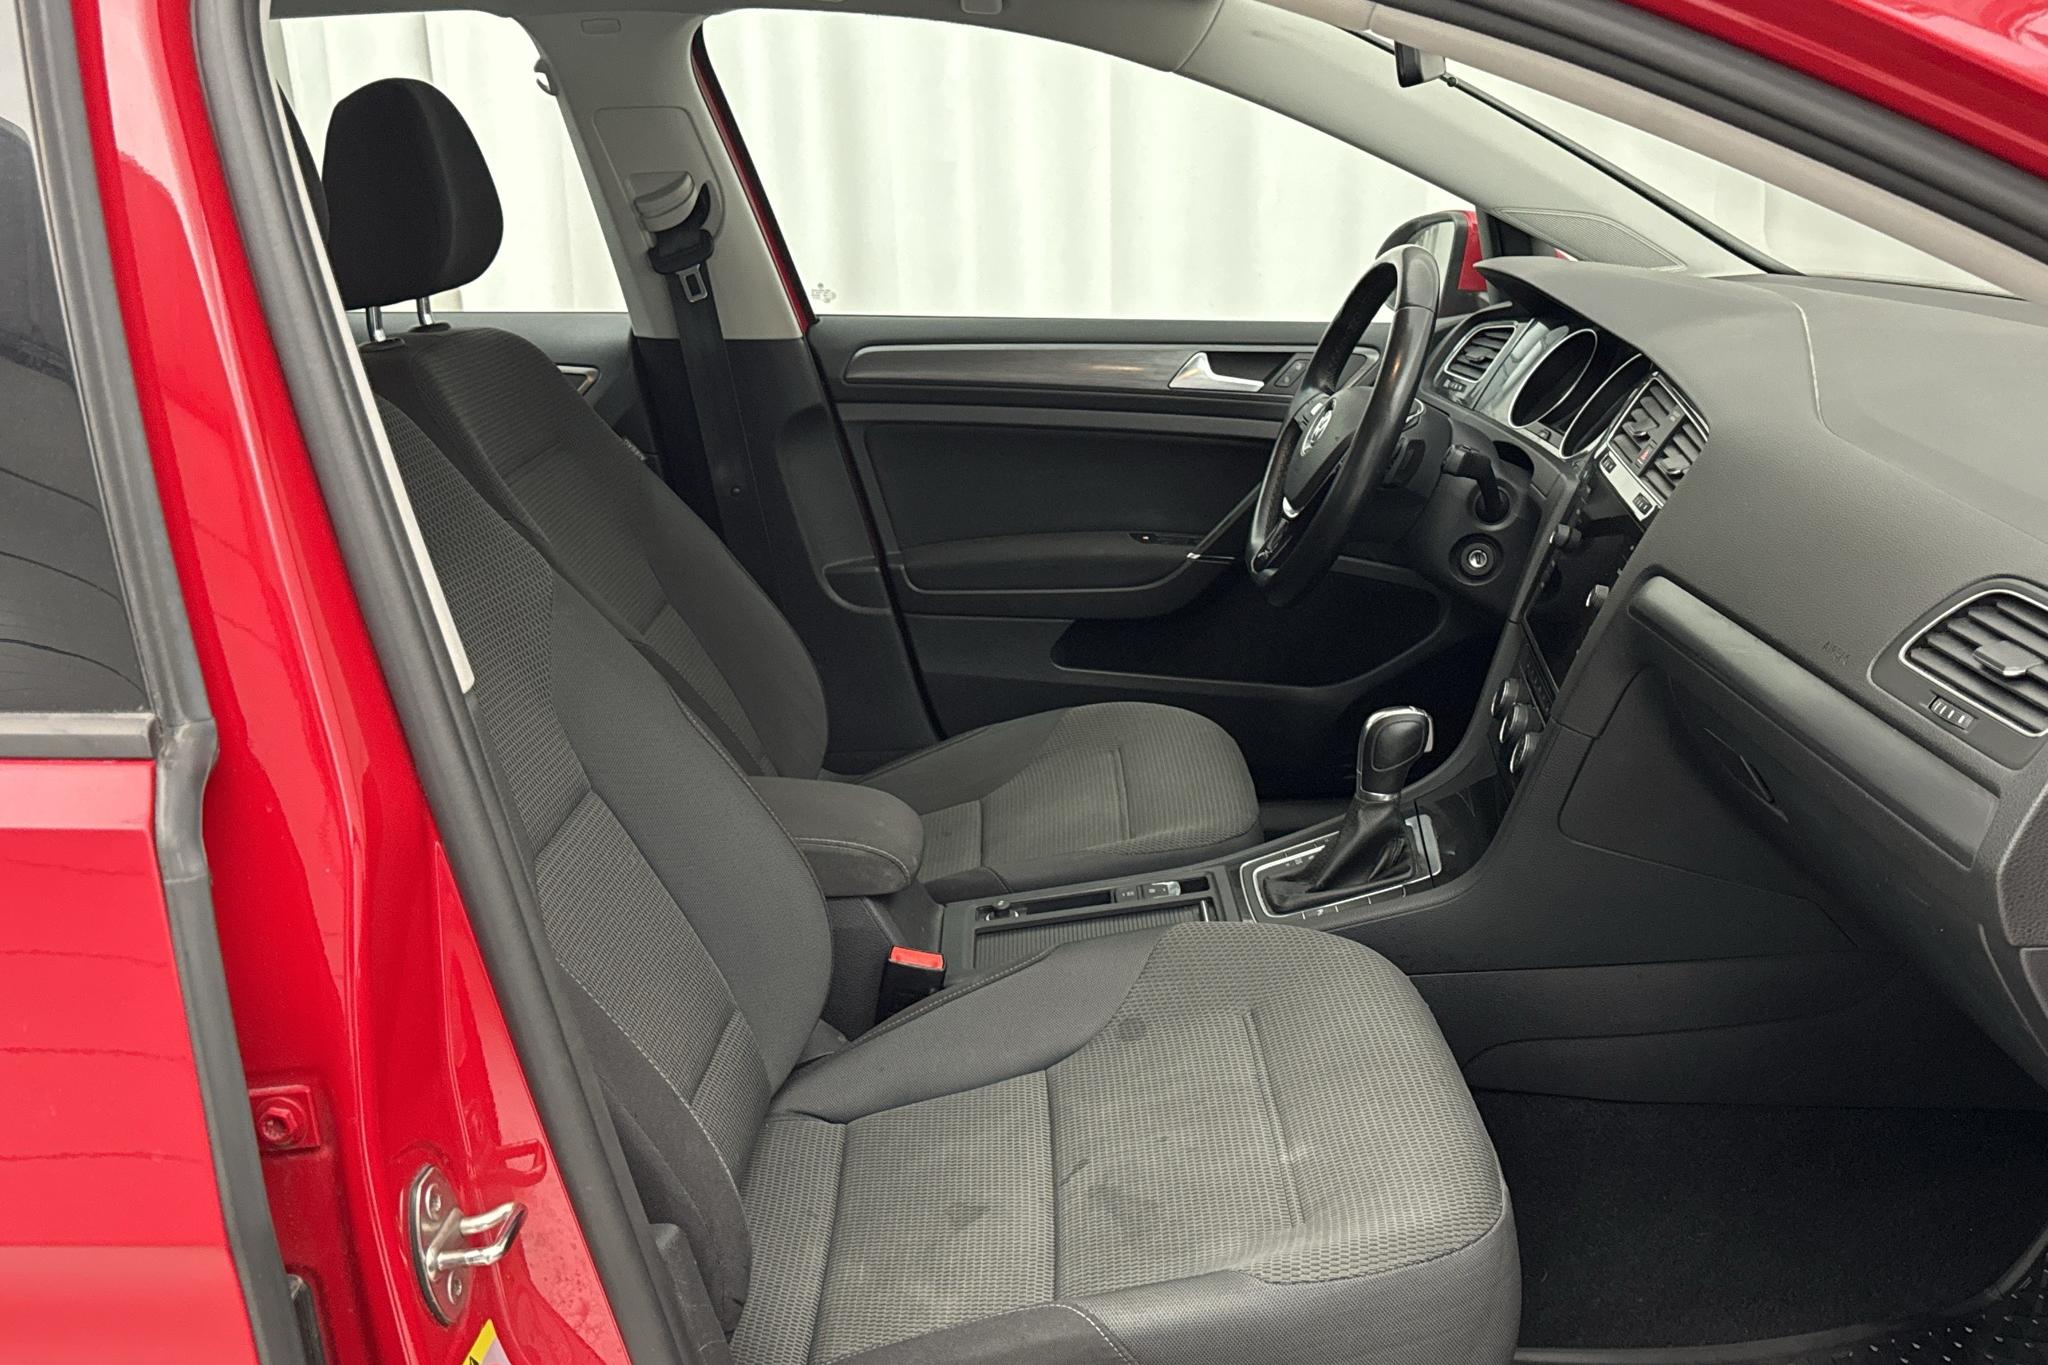 VW Golf VII 1.0 TSI Sportscombi (110hk) - 102 970 km - Automatyczna - czerwony - 2018